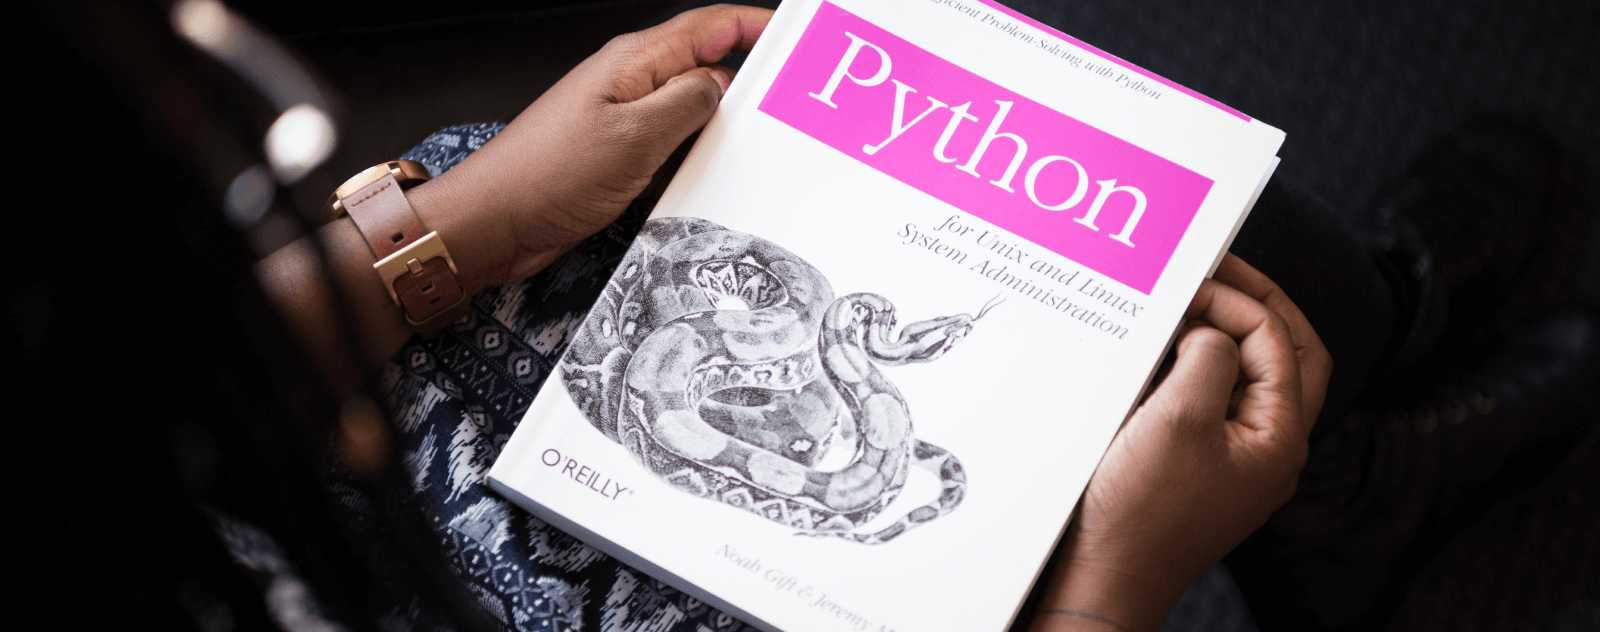 Les meilleurs livres pour Apprendre Python